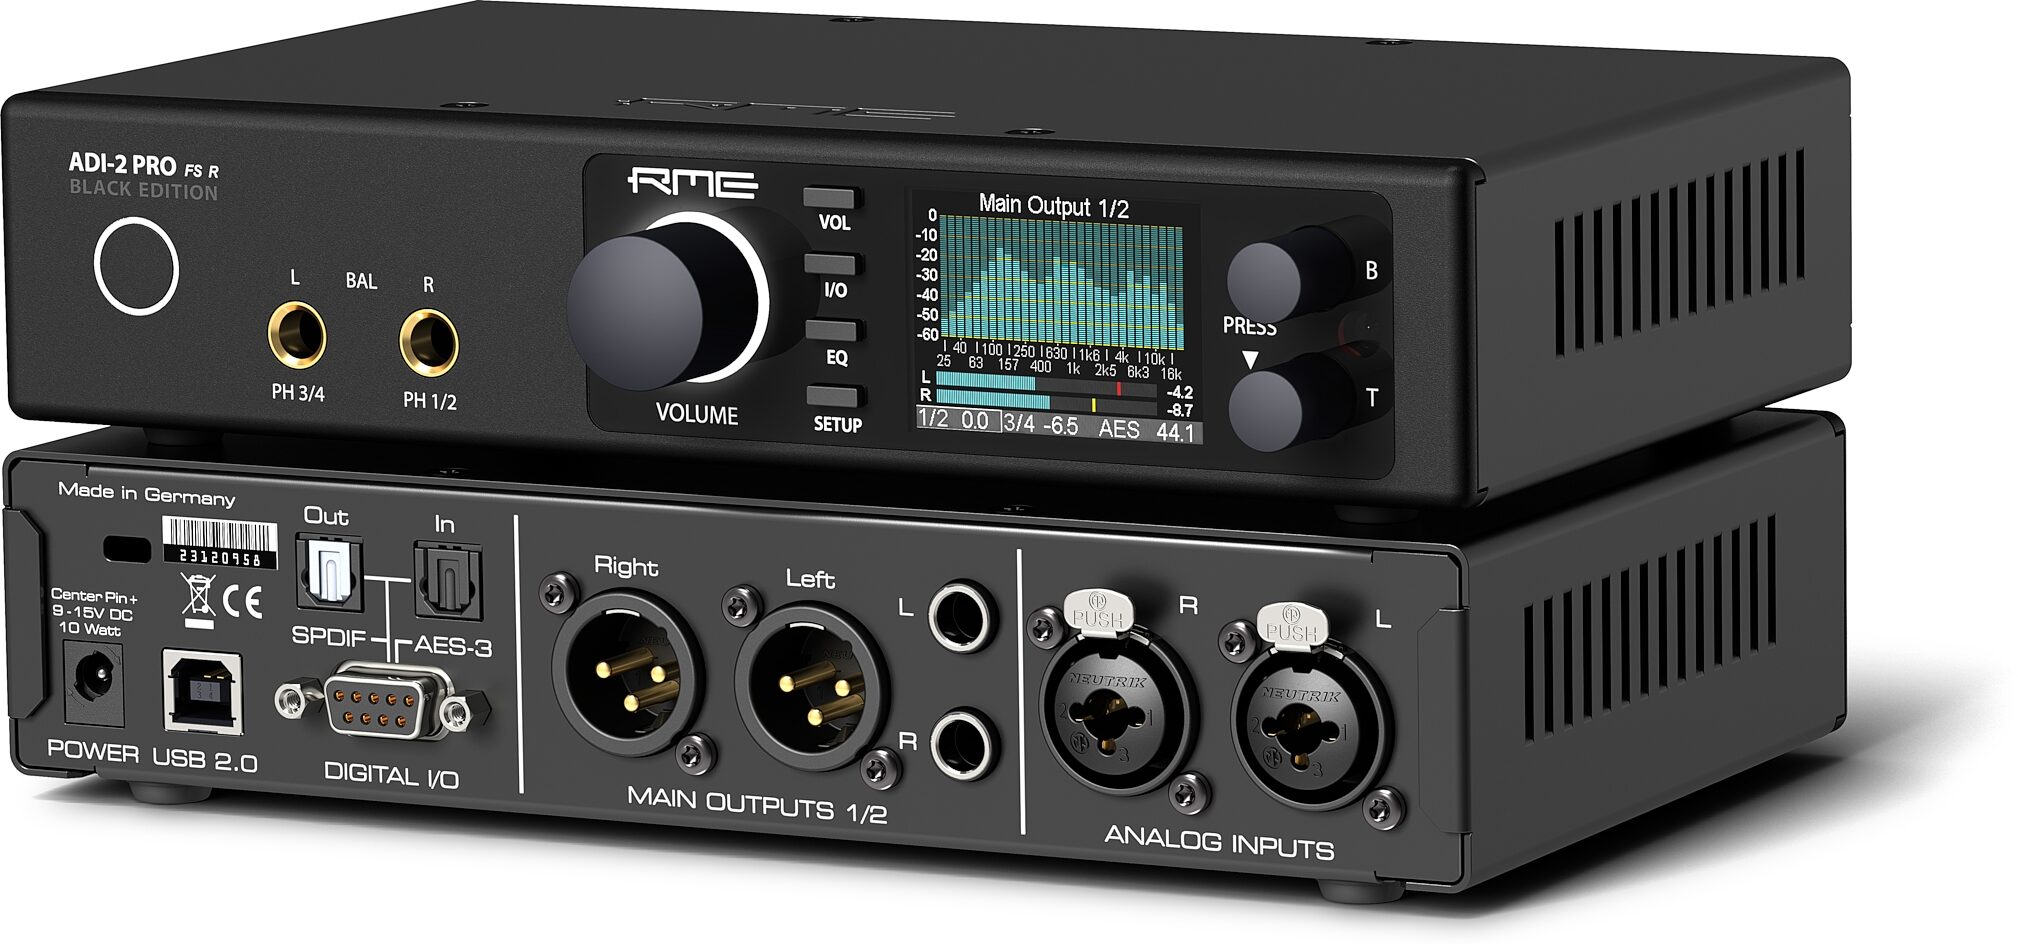 RME ADI-2 PRO FS R Black Edition AD/DA Audio Converter